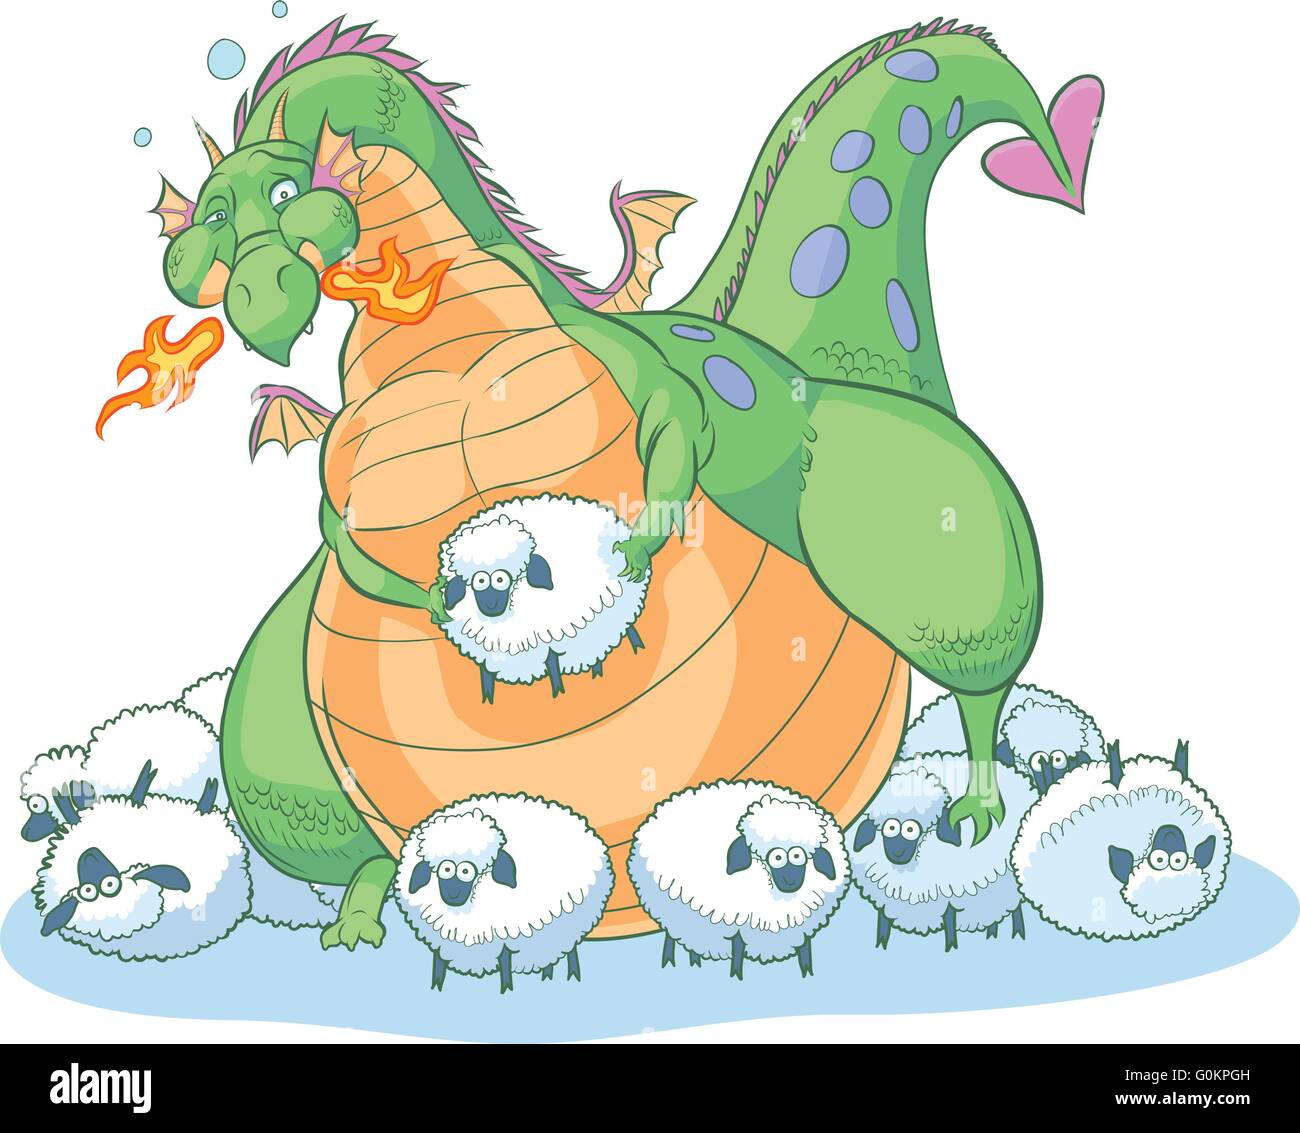 Un excès de graisse dragon cartoon découvre que vous pouvez avoir trop d'une bonne chose. Il est entouré de clueless de moutons. Illustration de Vecteur